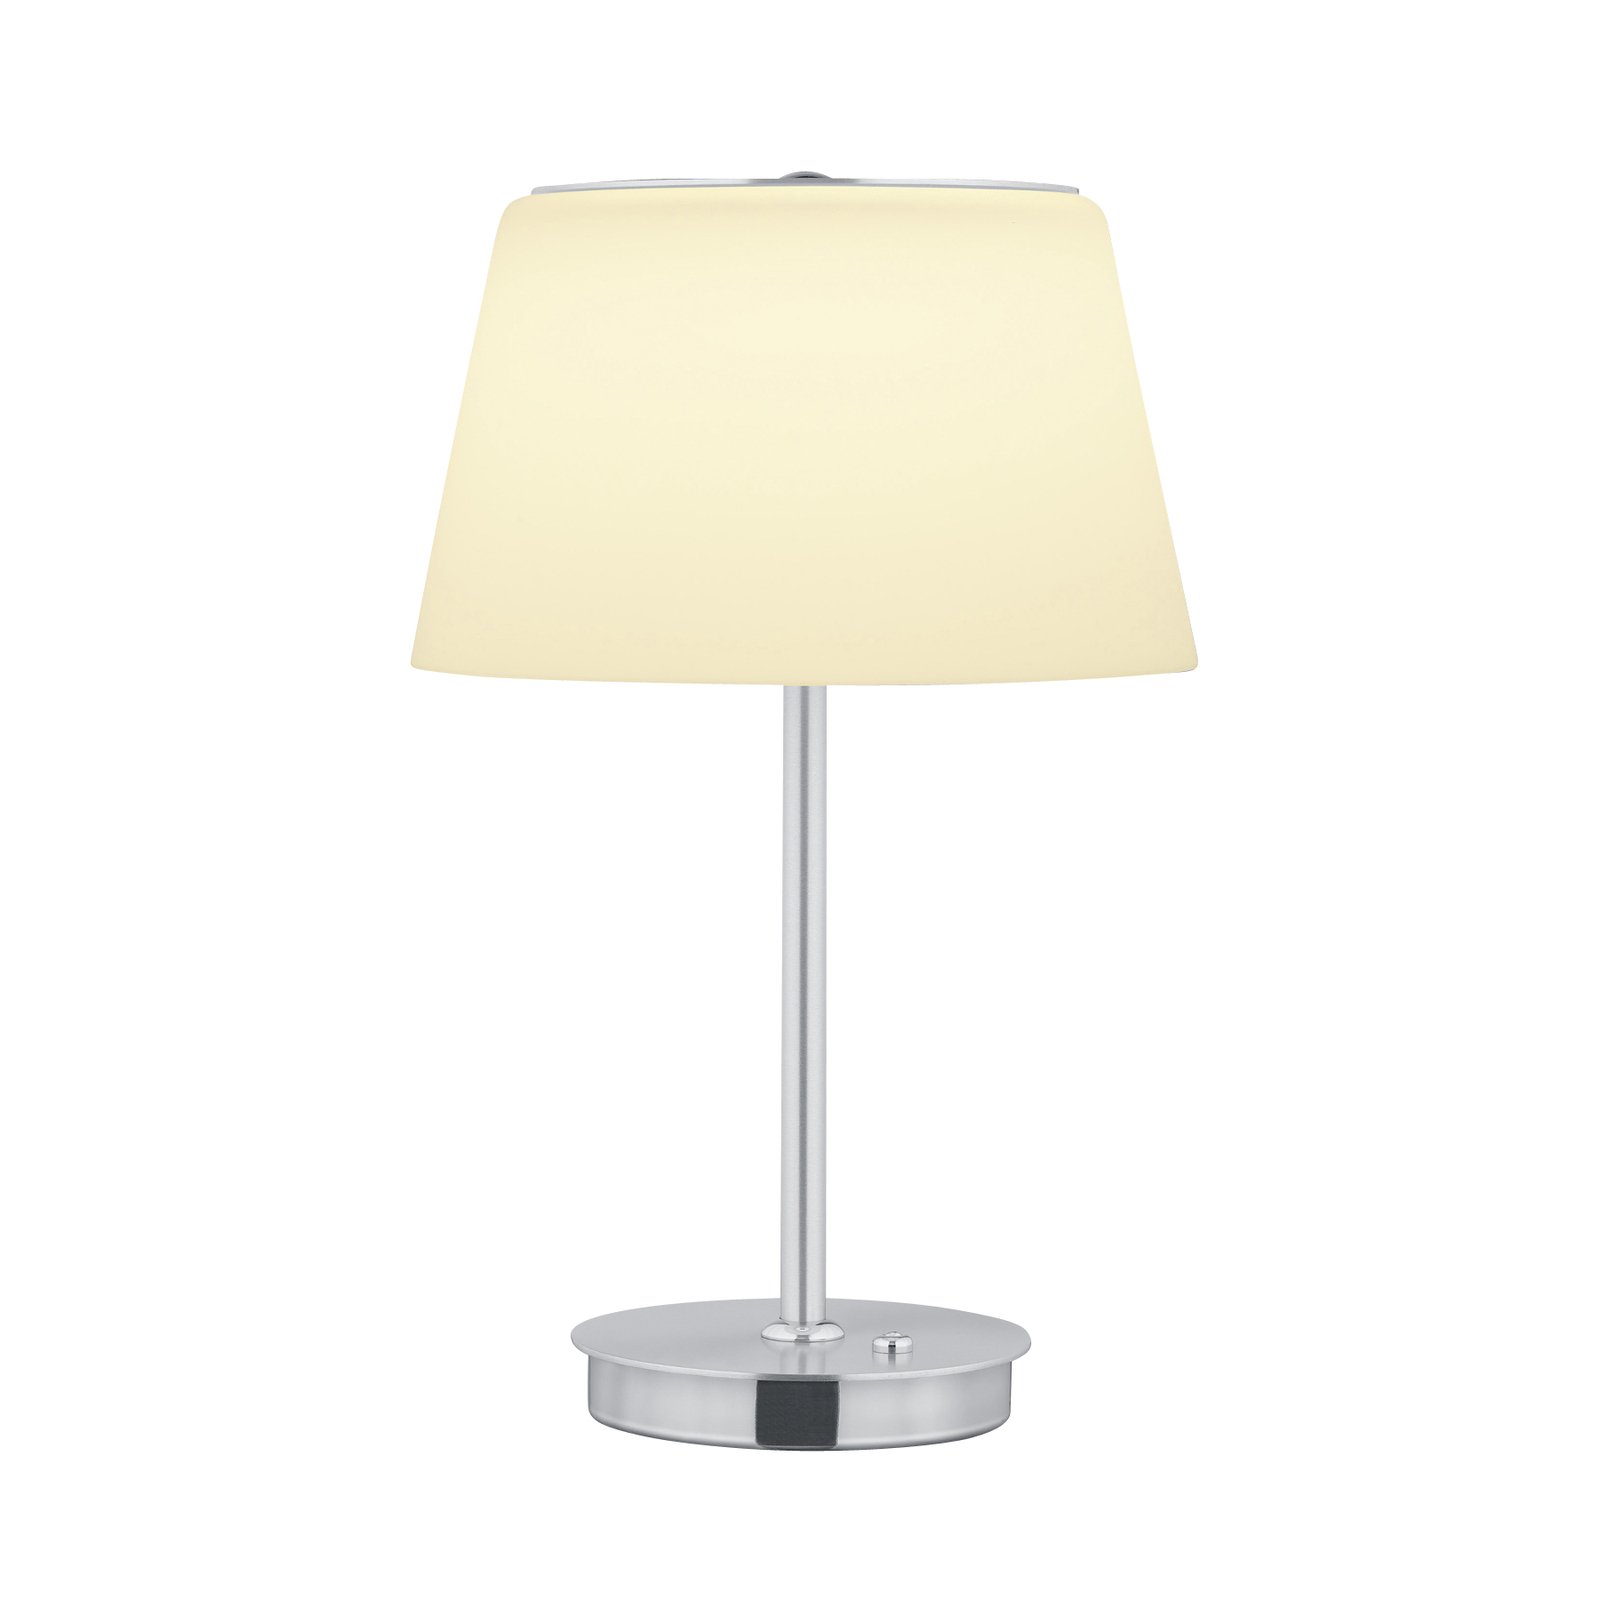 BANKAMP Conus LED table lamp, nickel